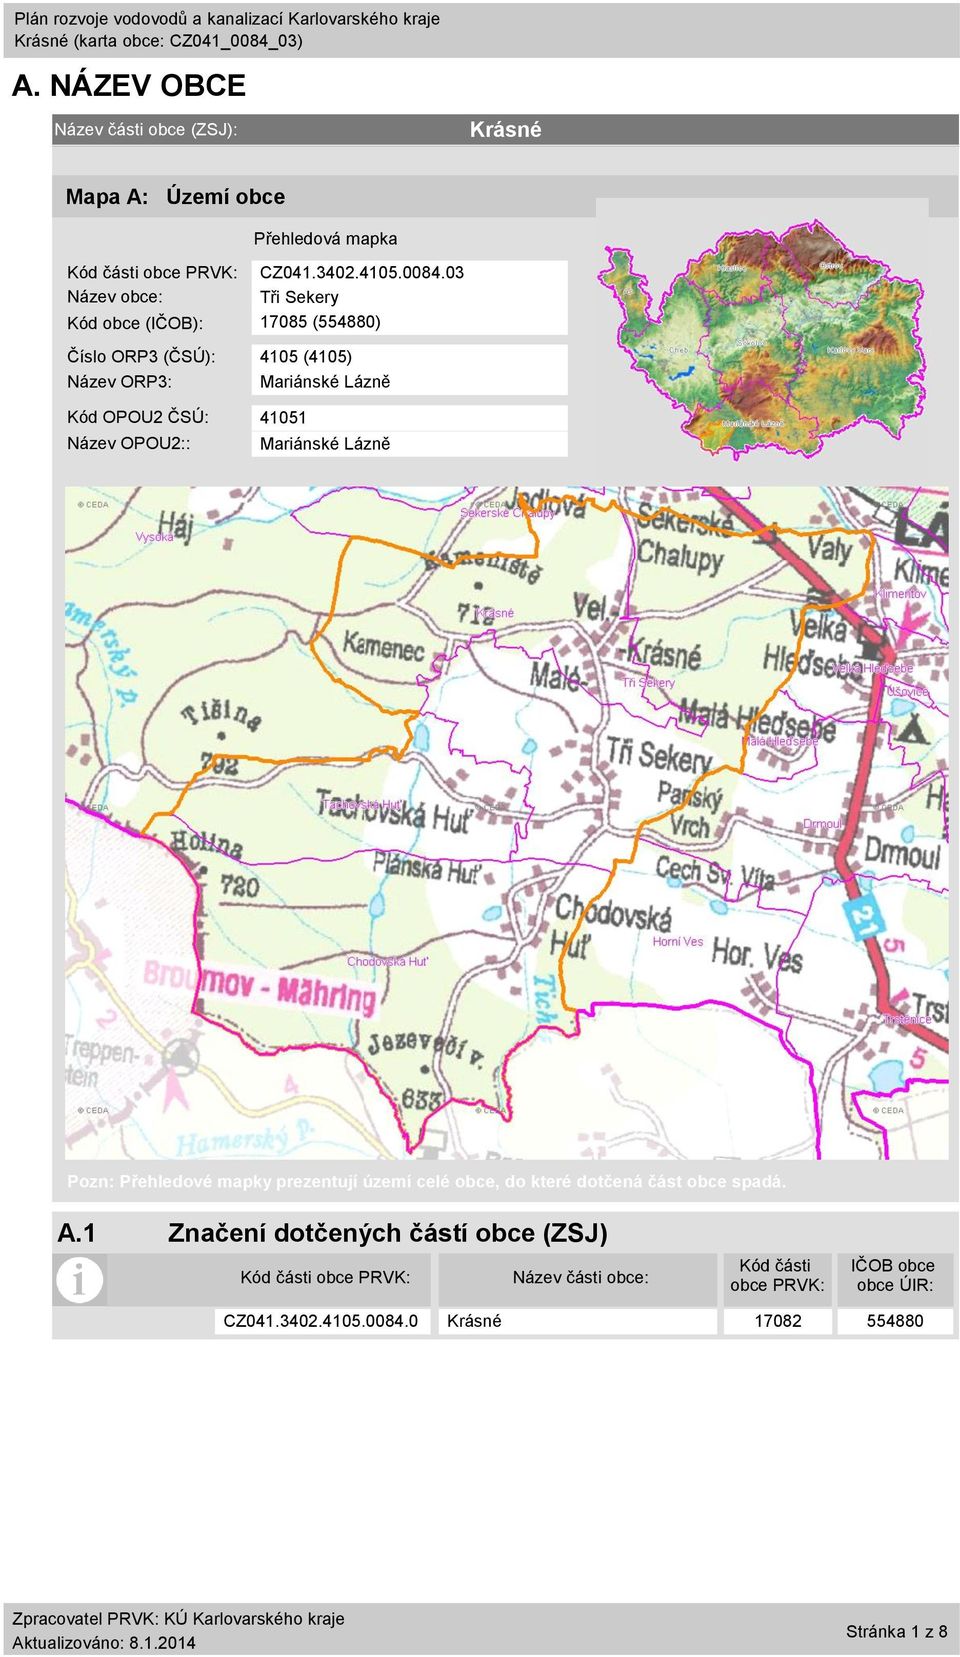 41051 Název OPOU2:: Mariánské Lázně Pozn: Přehledové mapky prezentují území celé obce, do které dotčená část obce spadá. A.